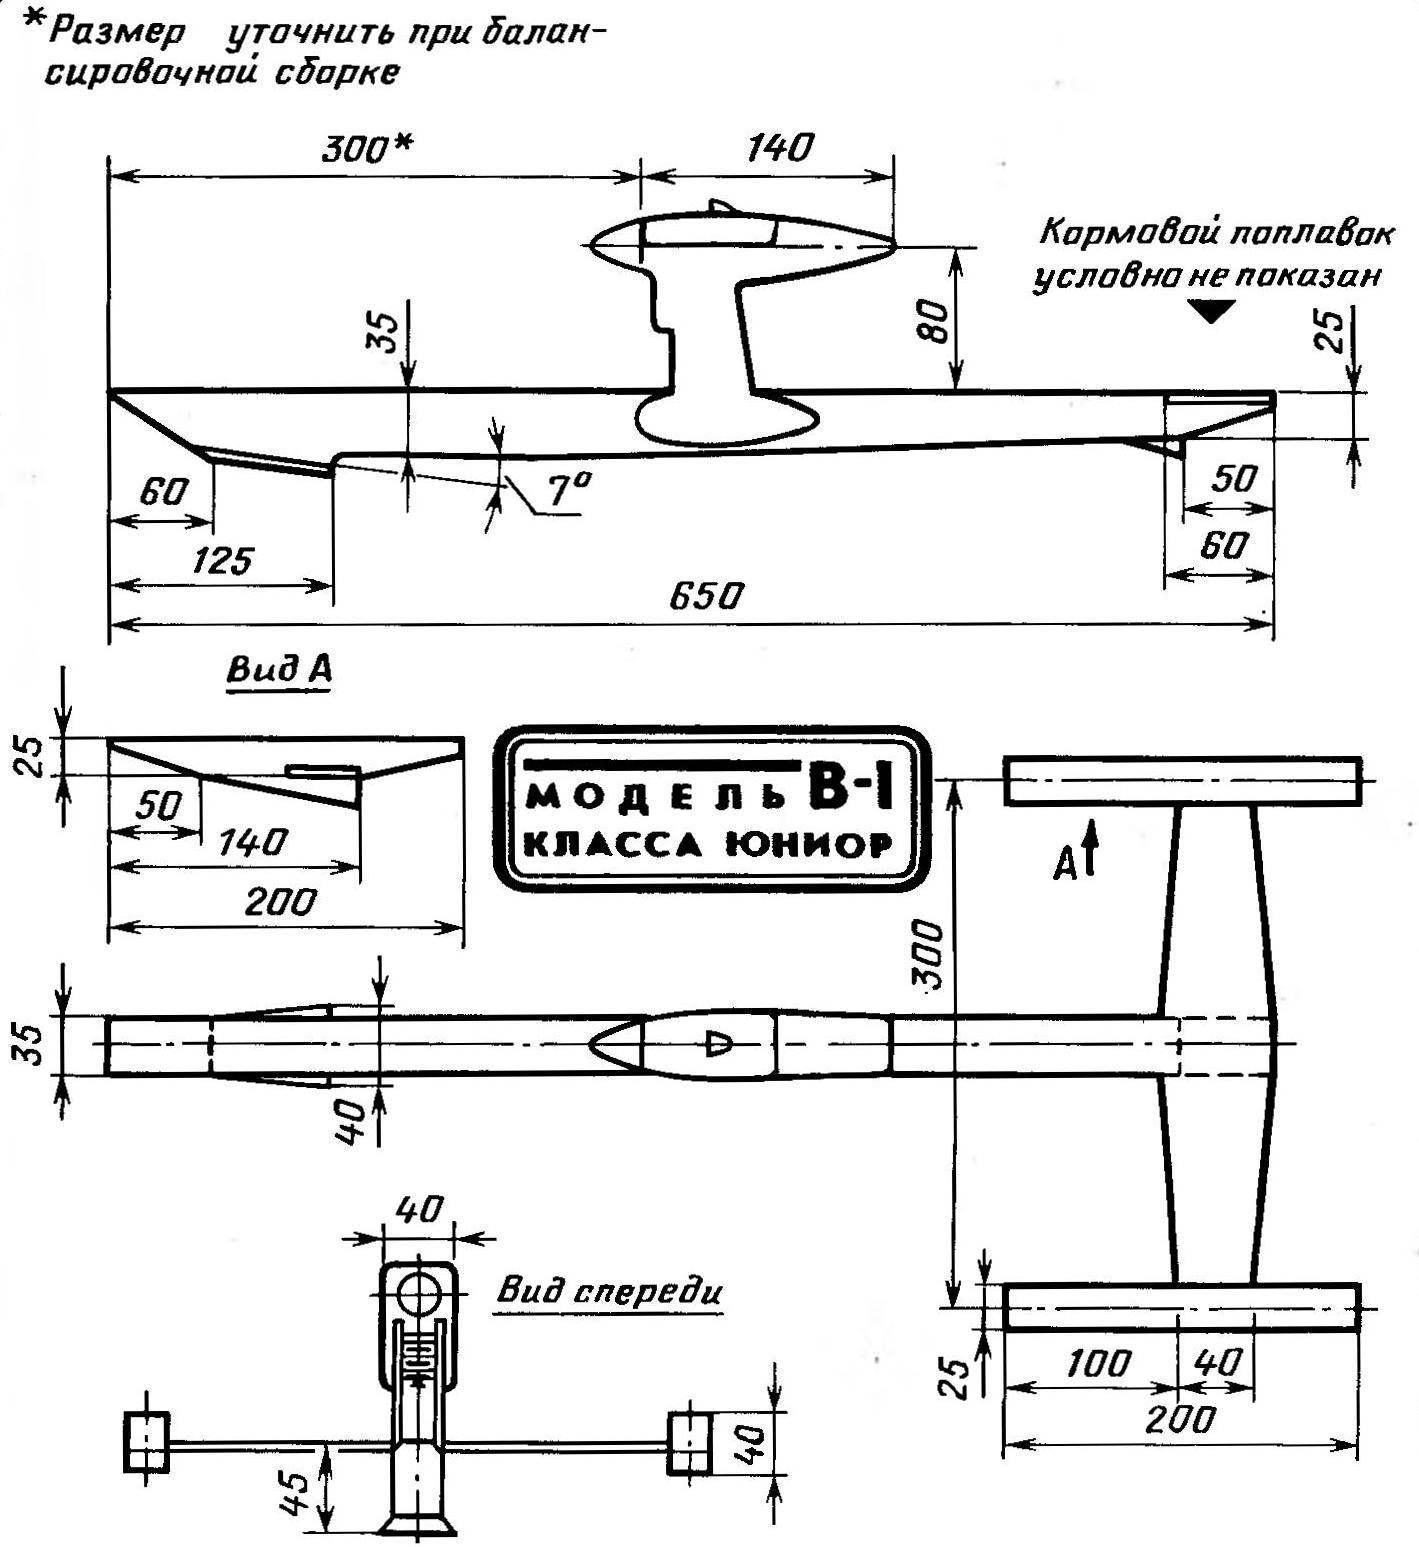 Рис. 1. Основные геометрические параметры модели аэроглиссера с двигателем внутреннего сгорания рабочим объемом 1,5 см3.